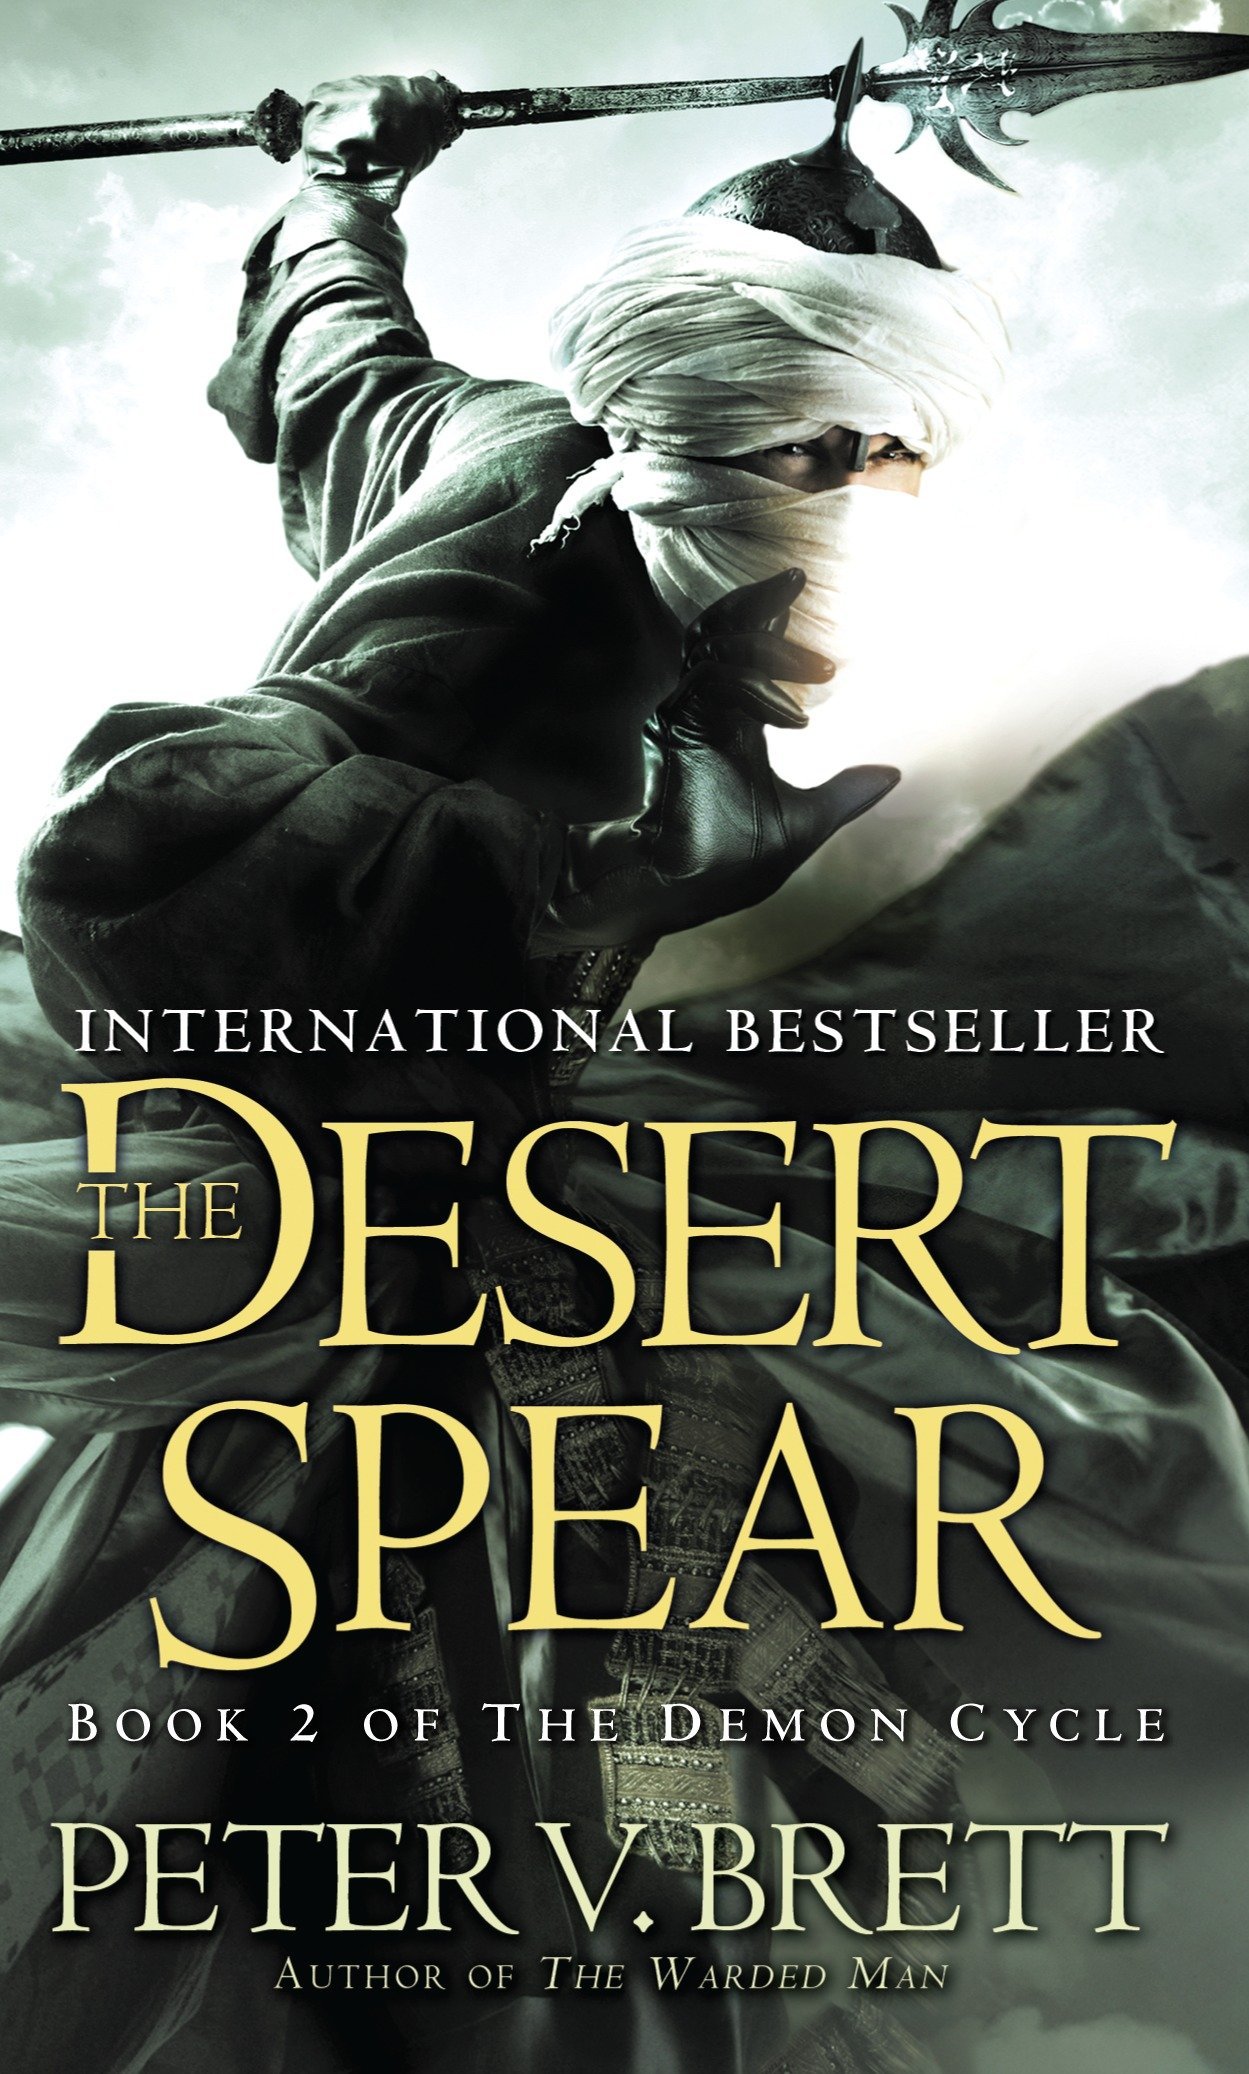 The Desert Spear - Peter V. Brett